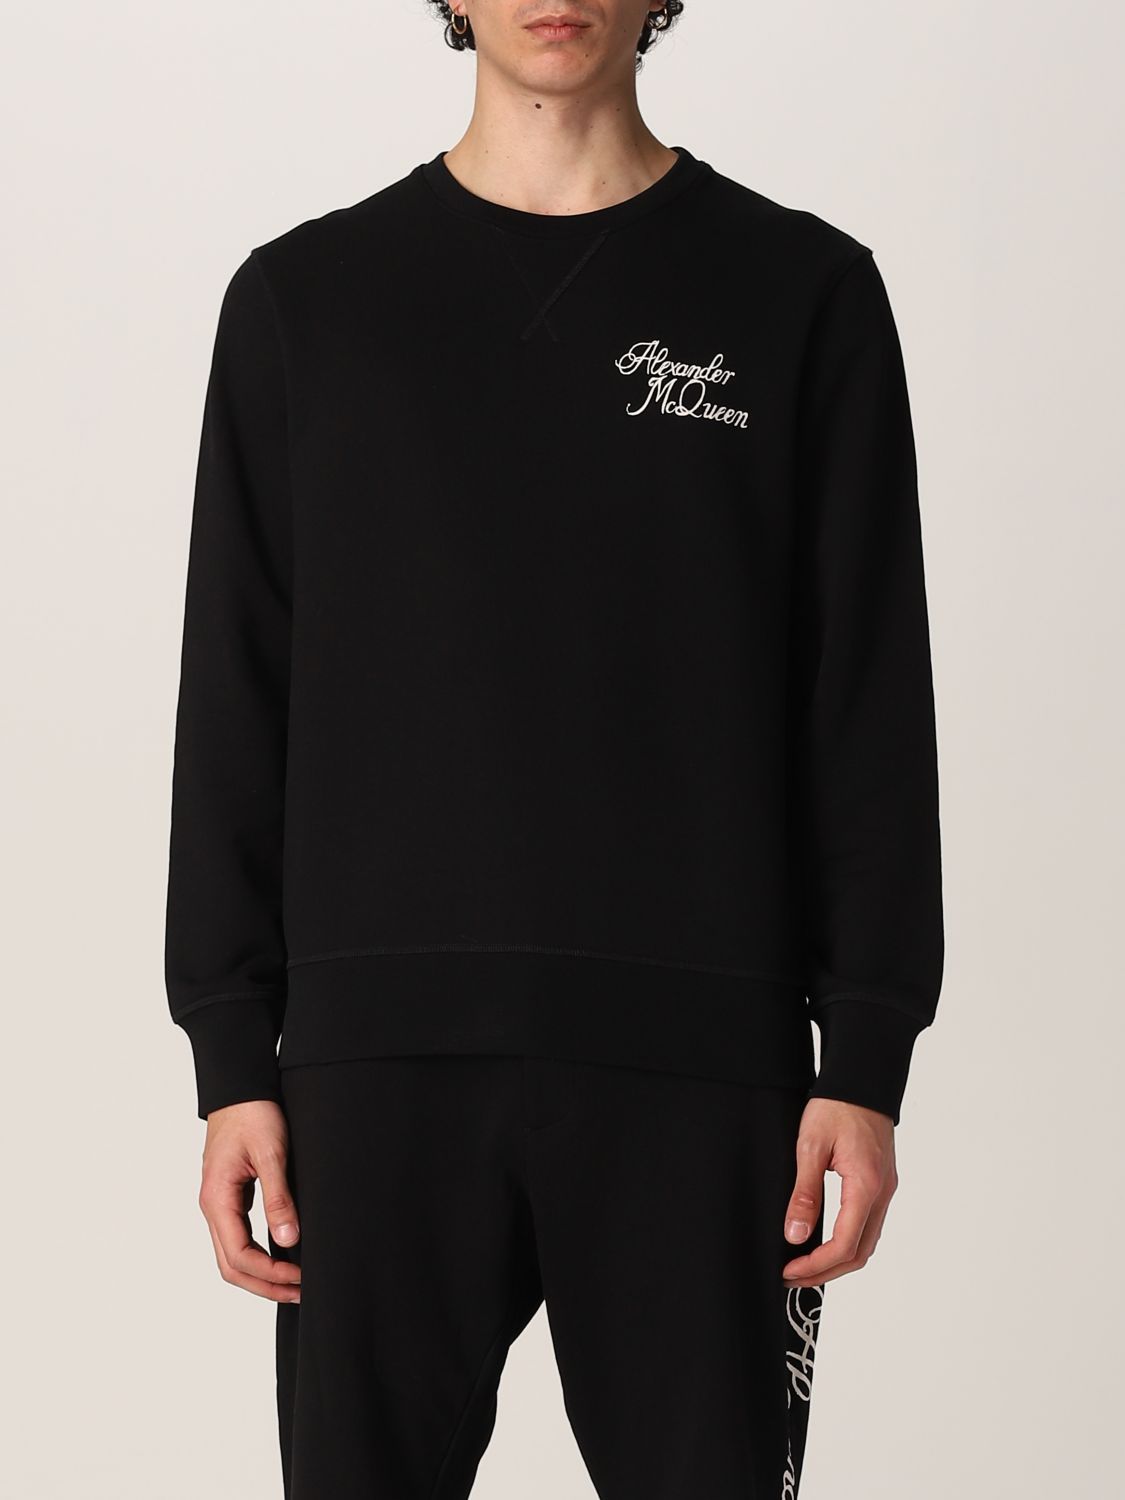 Alexander McQueen cotton sweatshirt with print